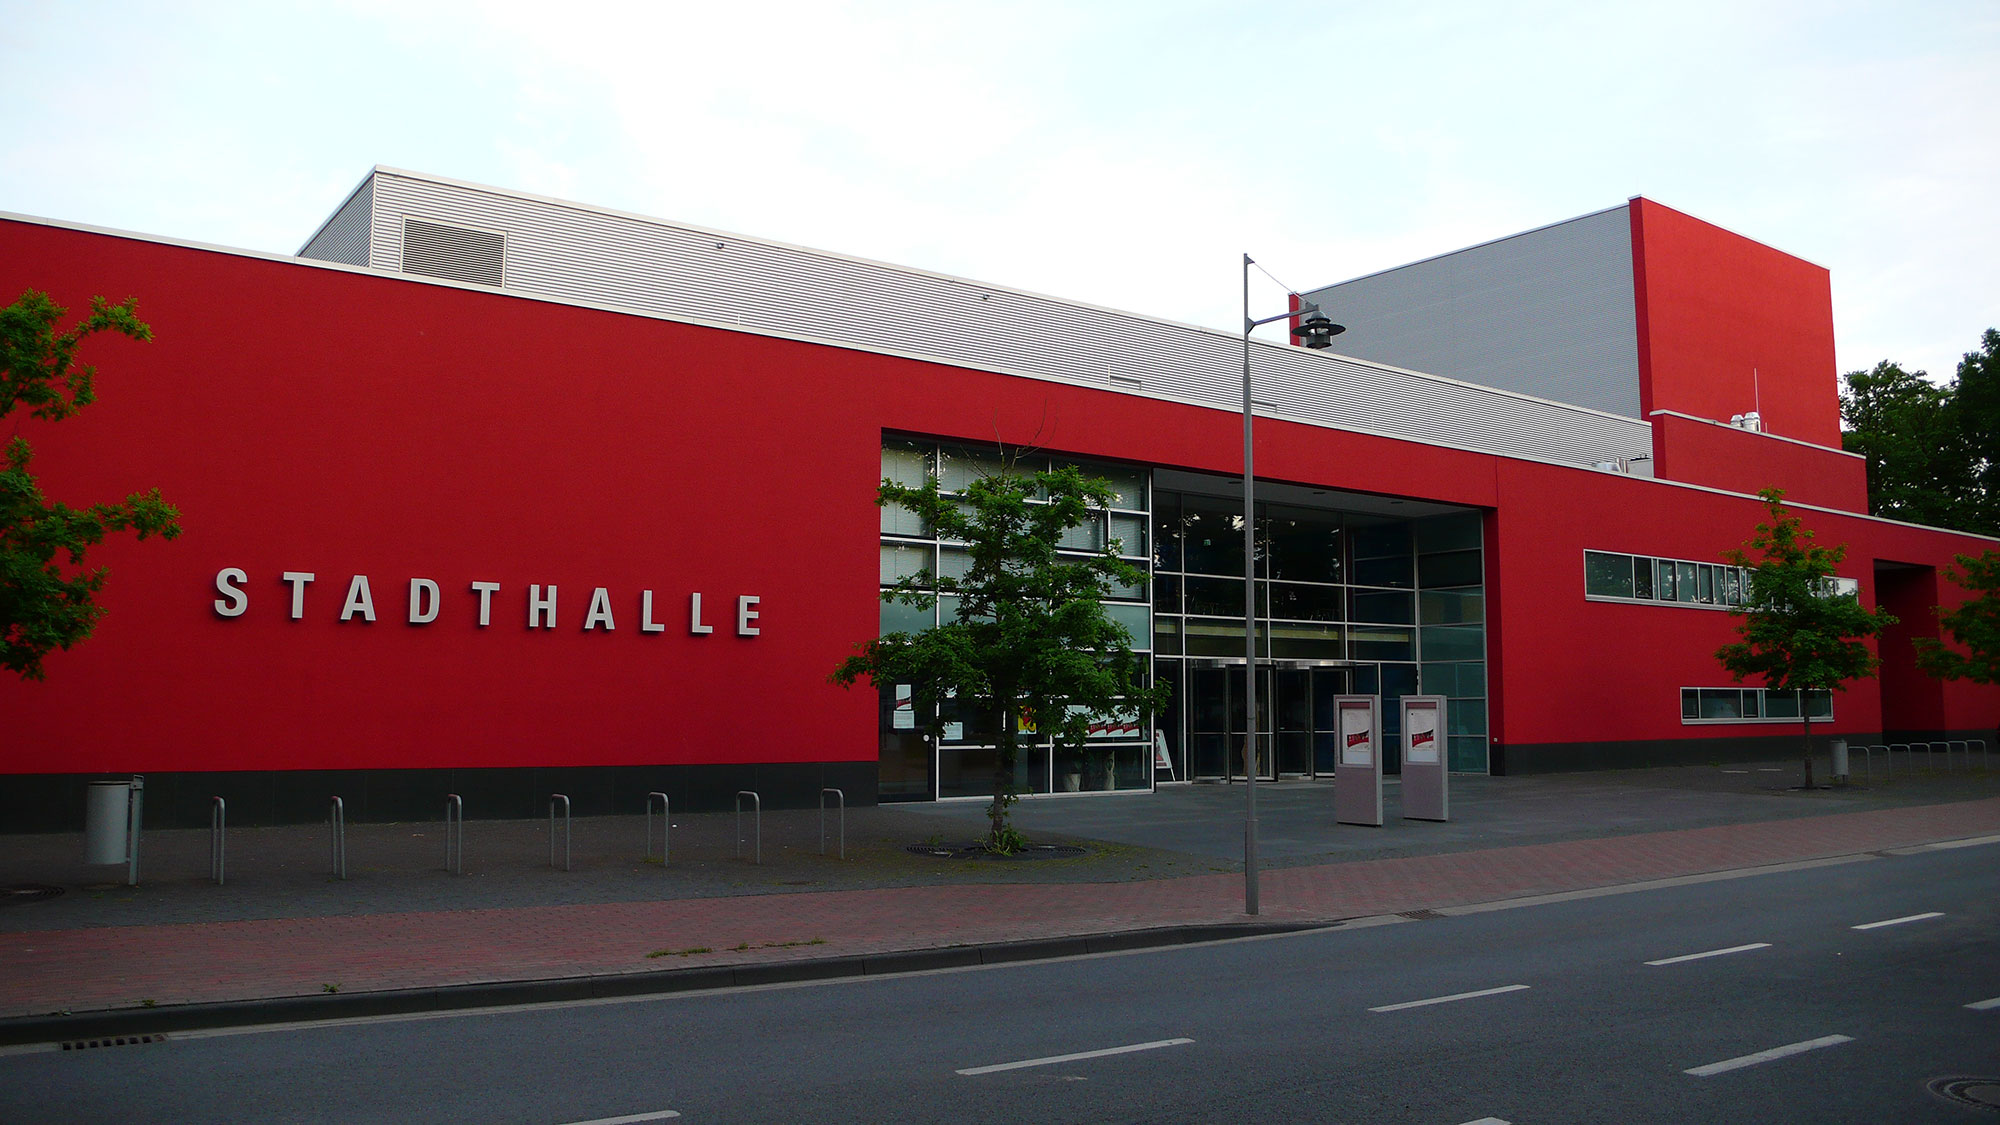 Stadthalle Gifhorn, Quelle: Südheide Gifhorn GmbH